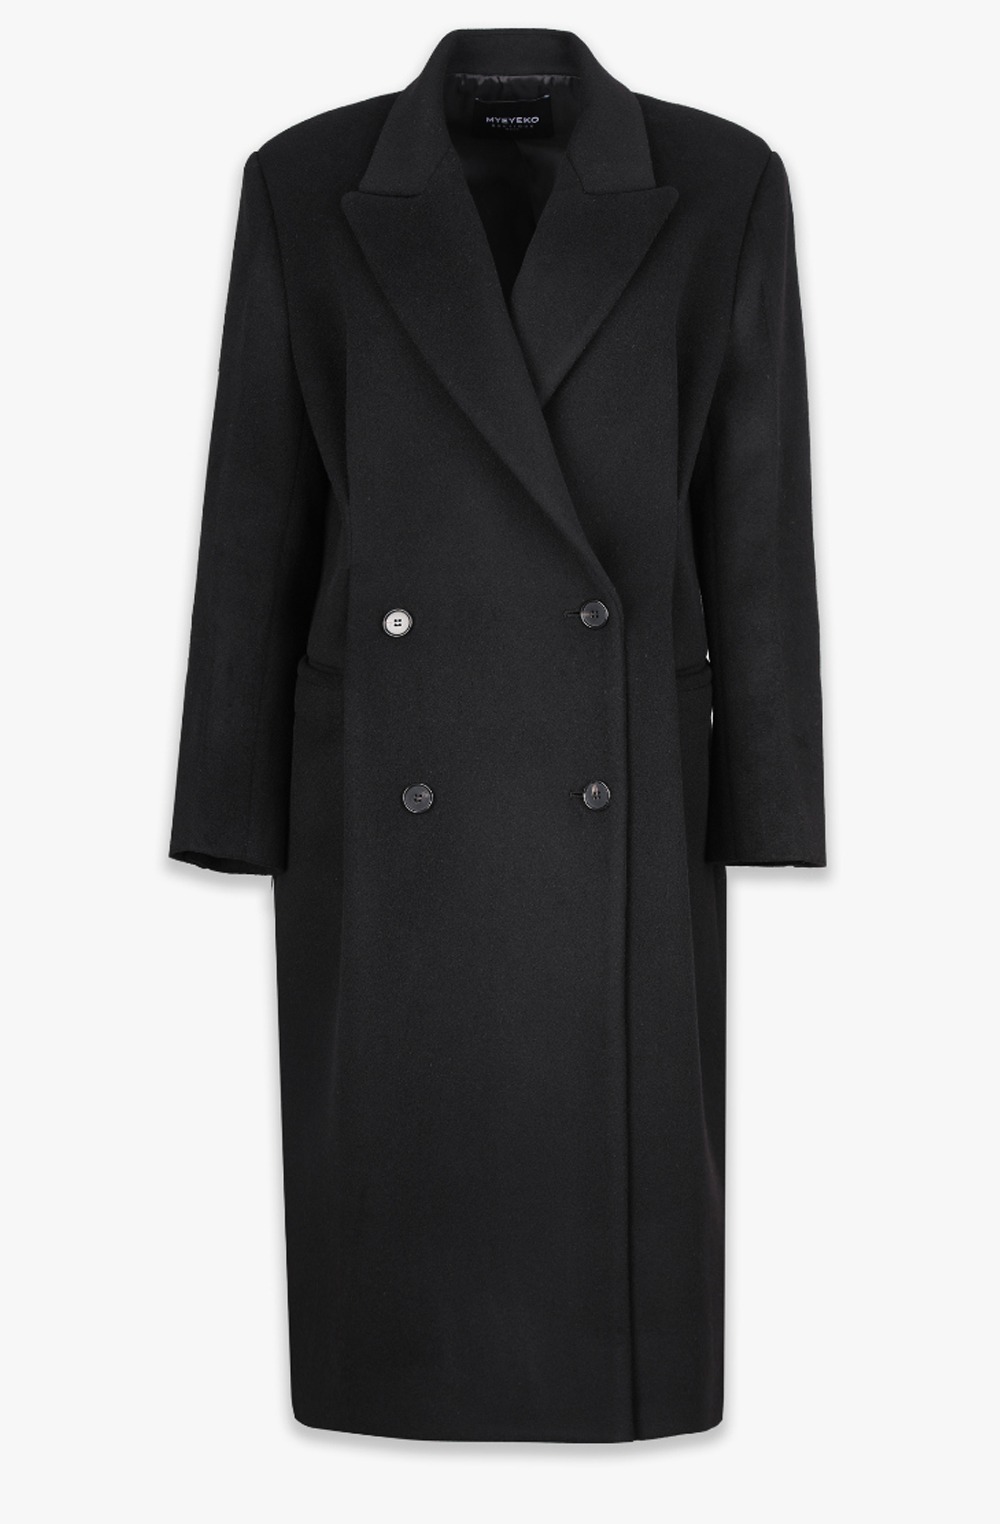 HIGH QUALITY LINE - Signature Olsen Classic Coat (SO BLACK)